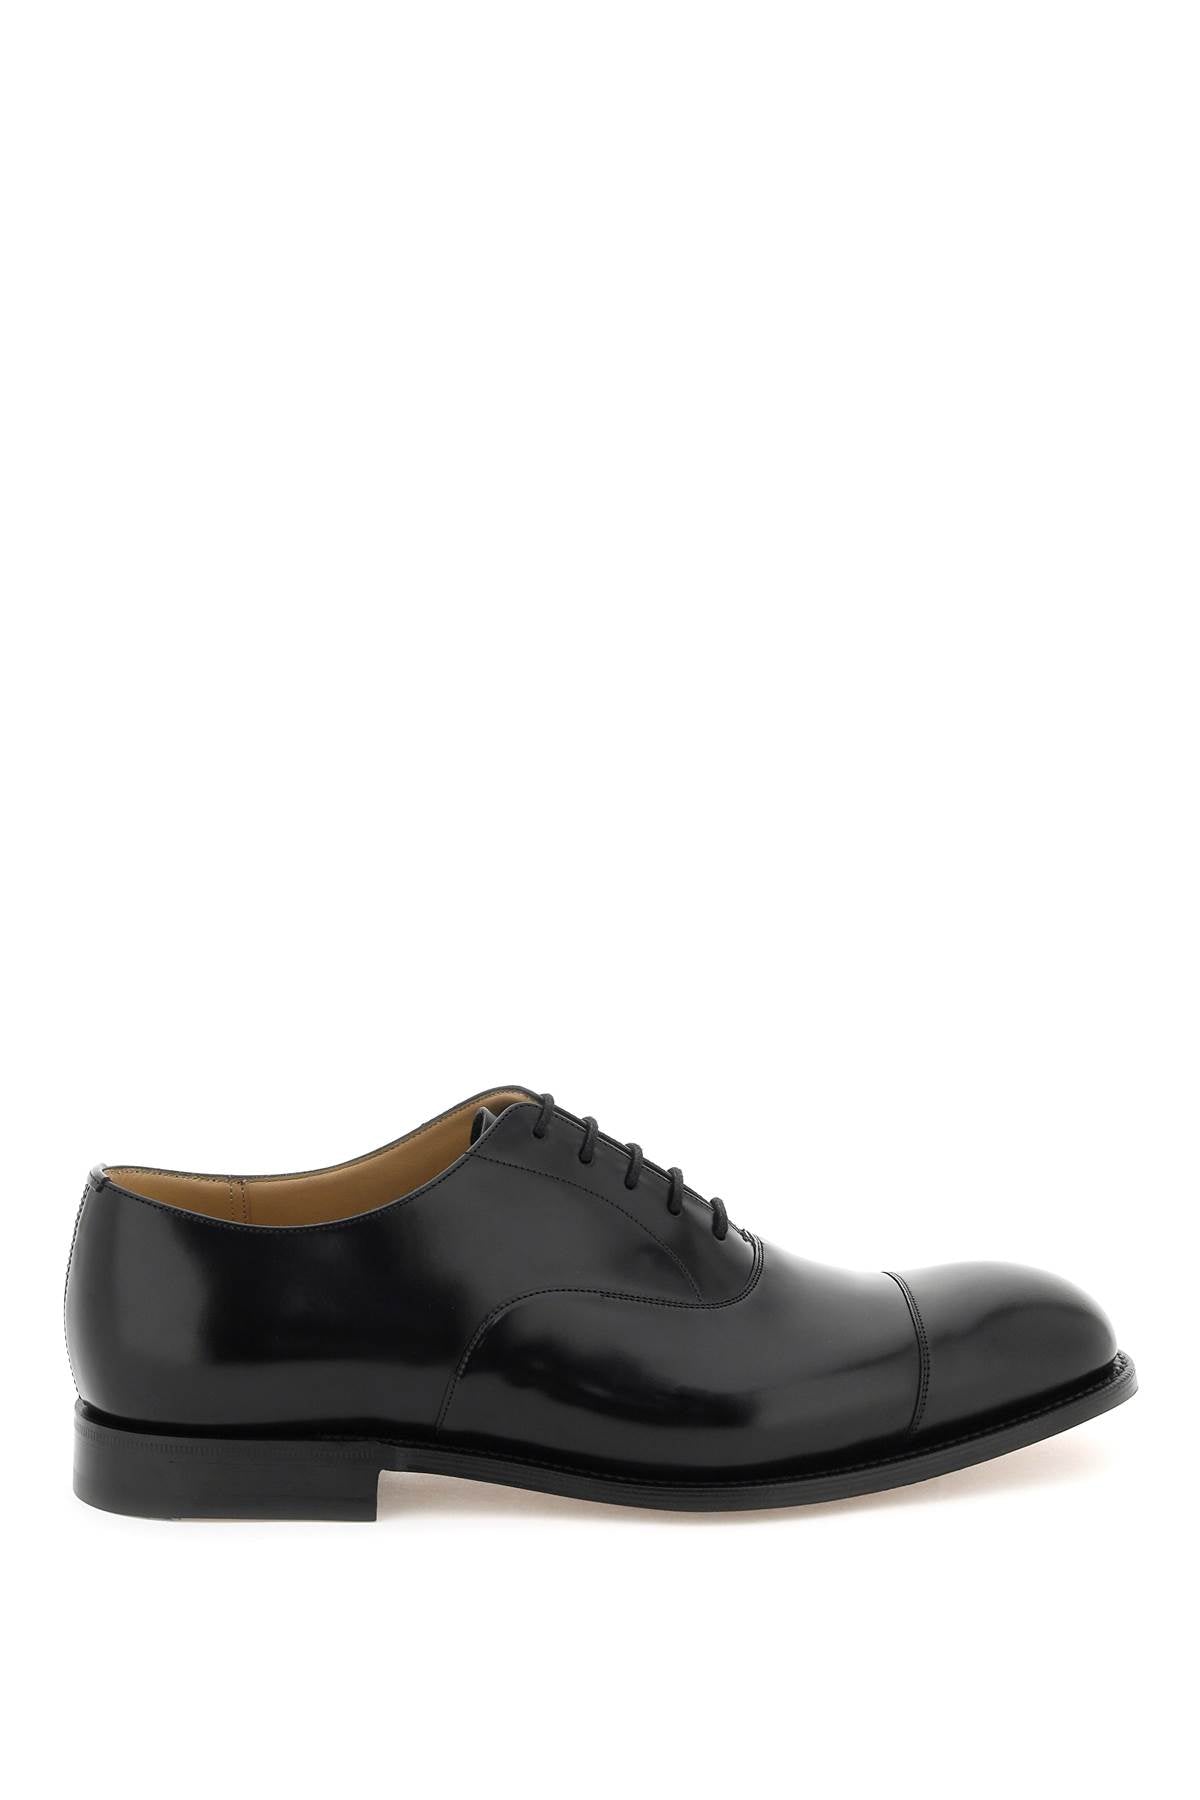 أحذية موكاسين جلدية سوداء للرجال - FW23